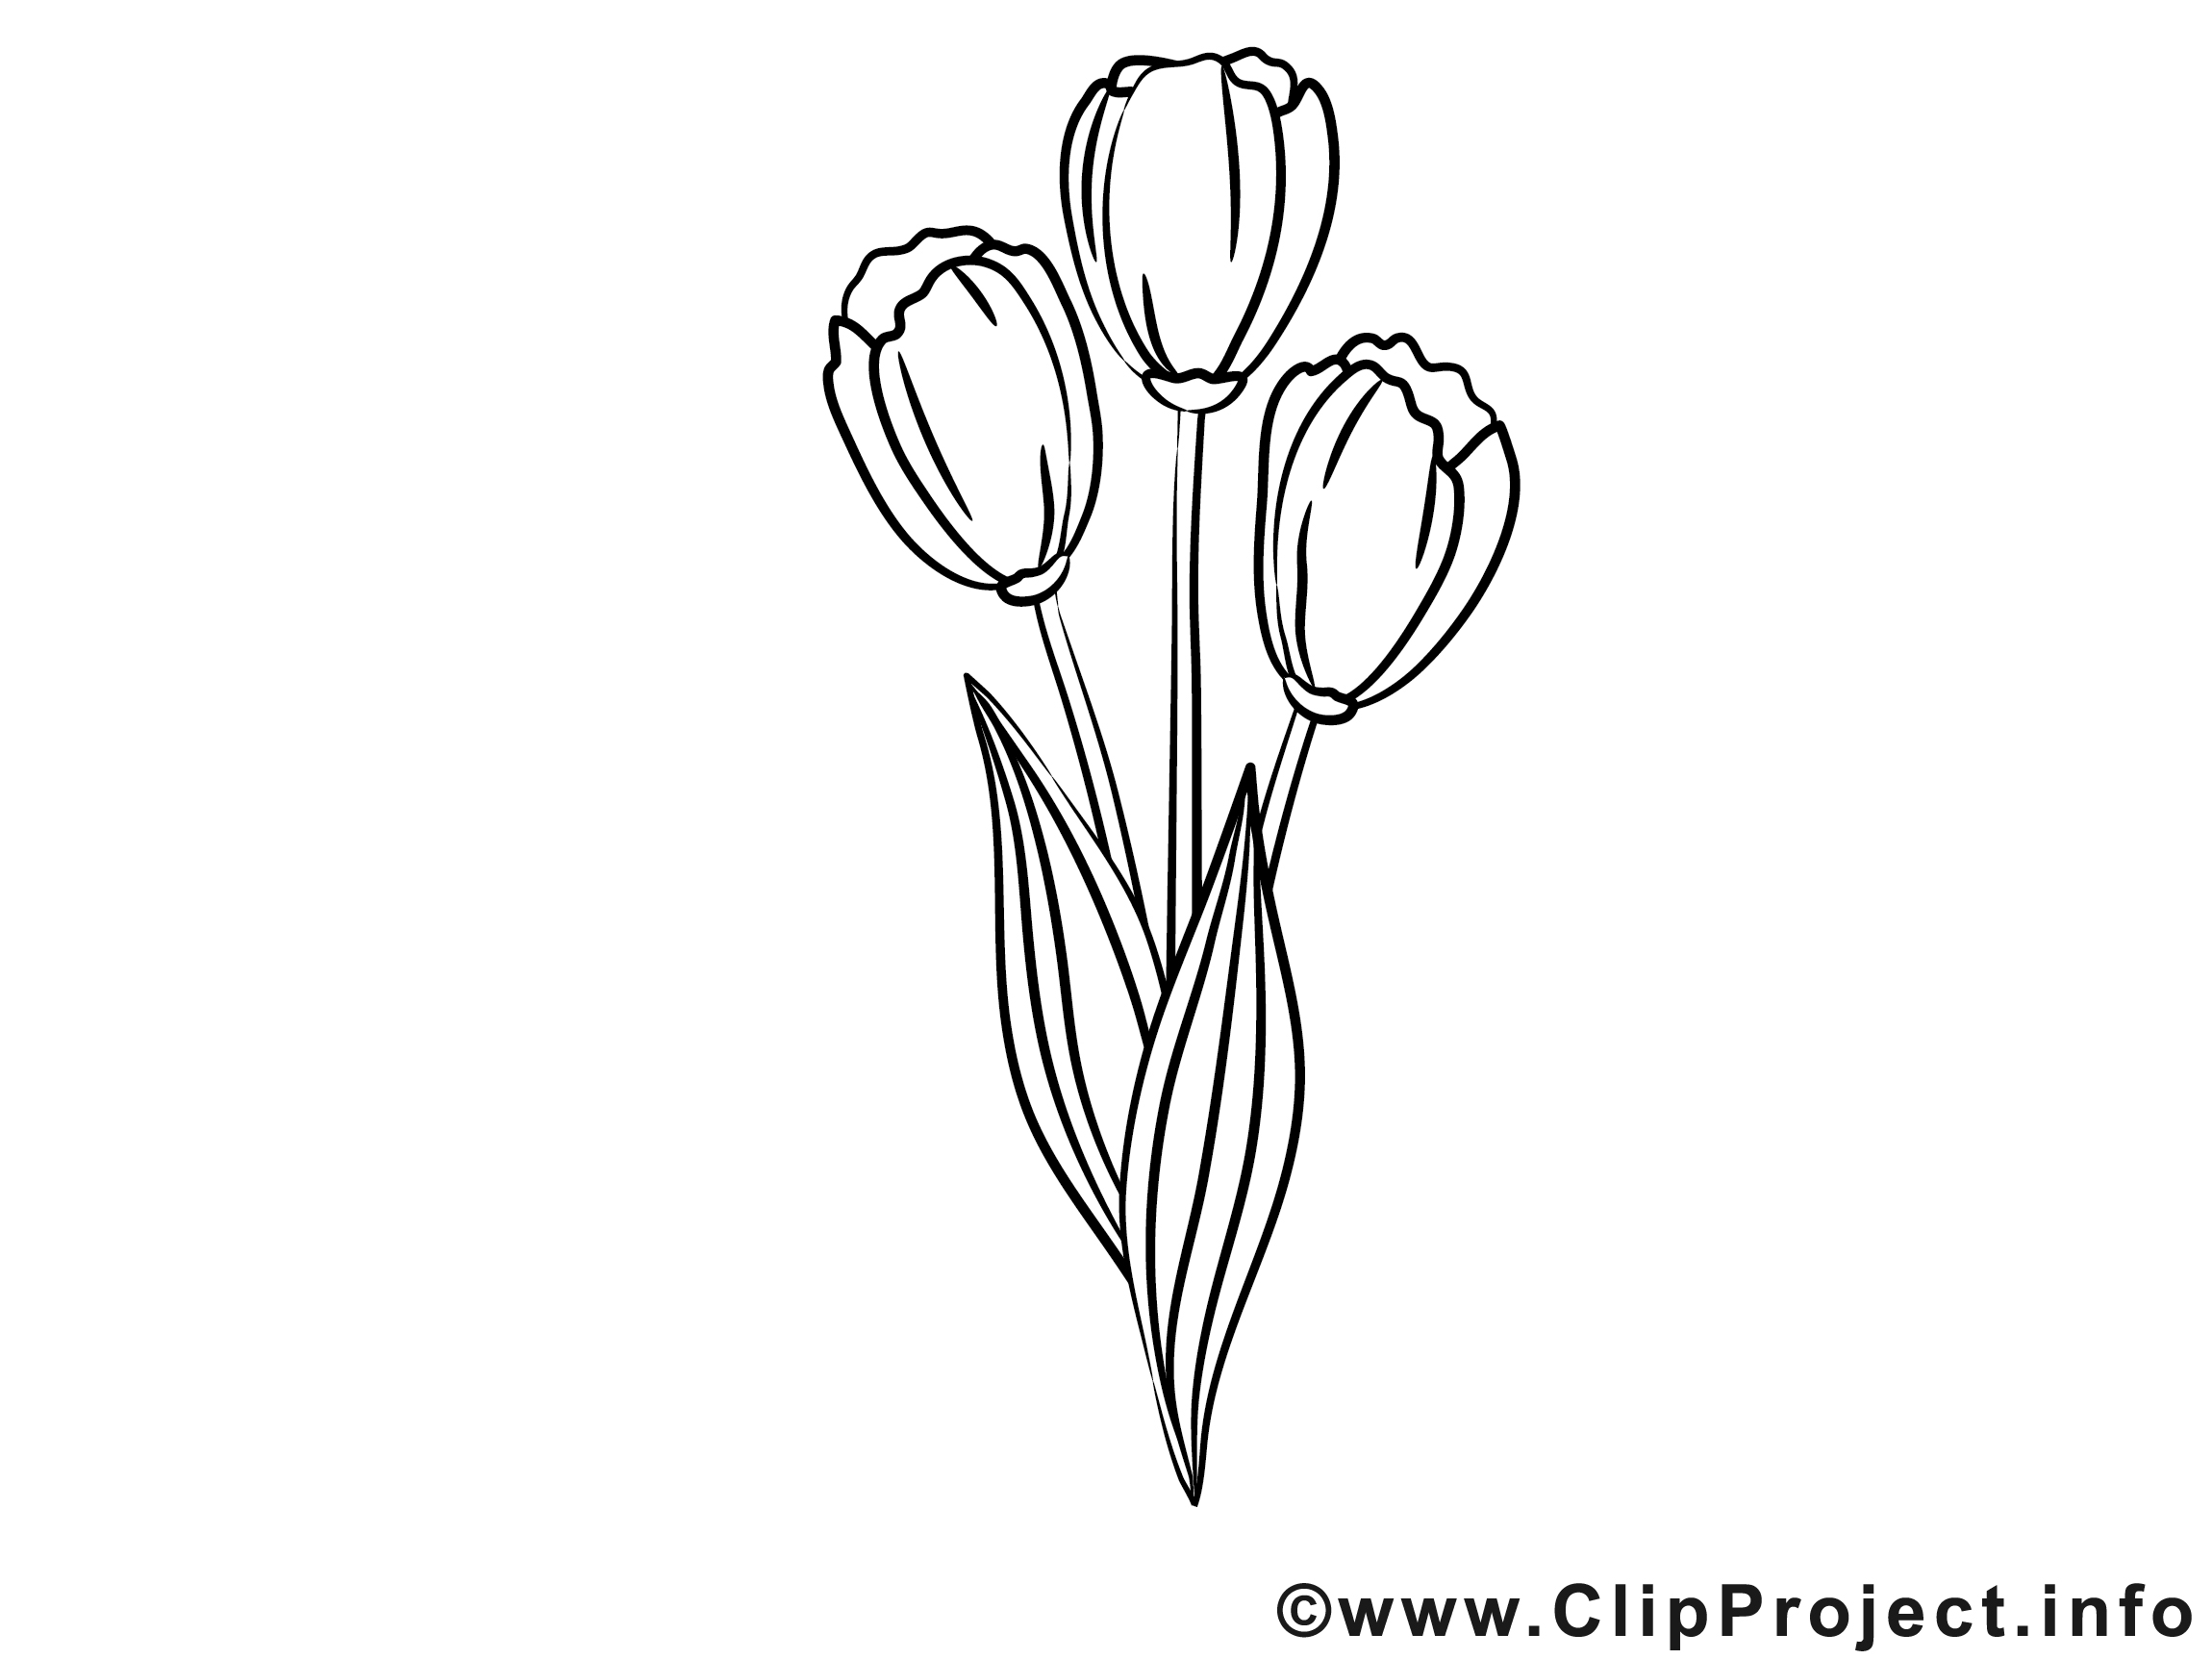 Tulipes Clipart Gratuit Fleurs A Colorier Fleurs Coloriages Dessin Picture Image Graphic Clip Art Telecharger Gratuit